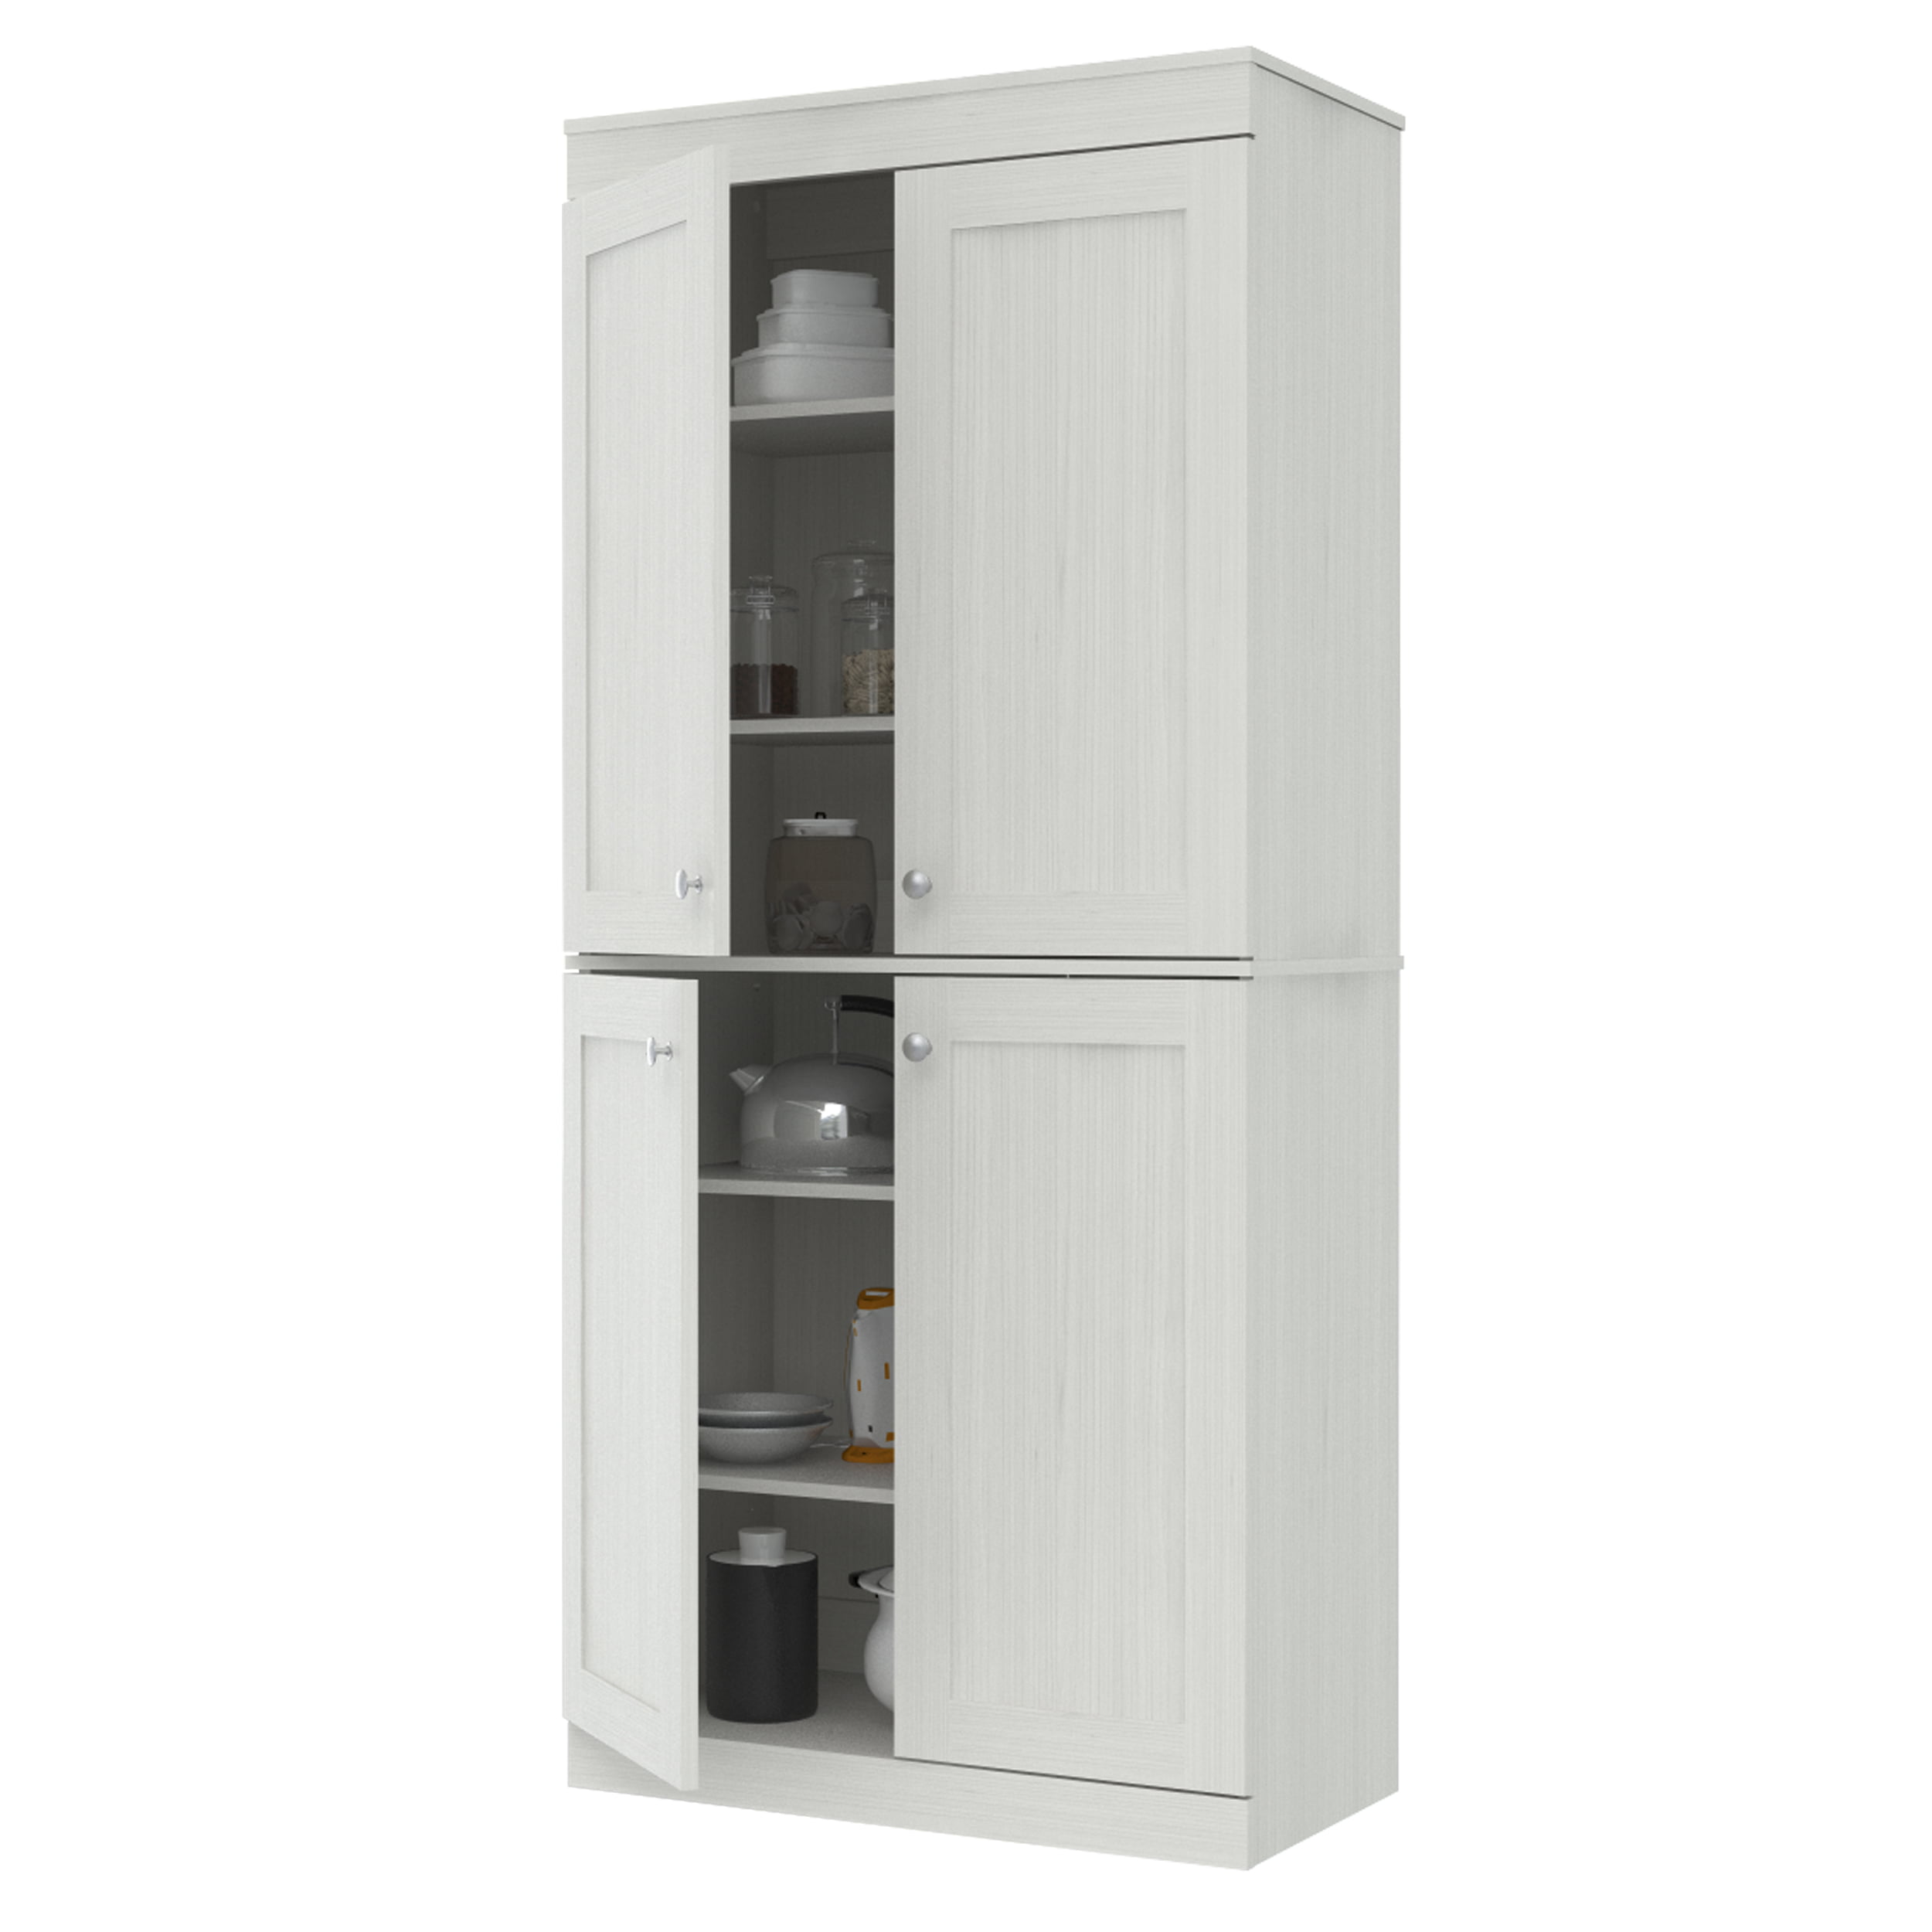 Inval Tall Kitchen Storage Cabinet : Amazon Com Inval America 4 Door